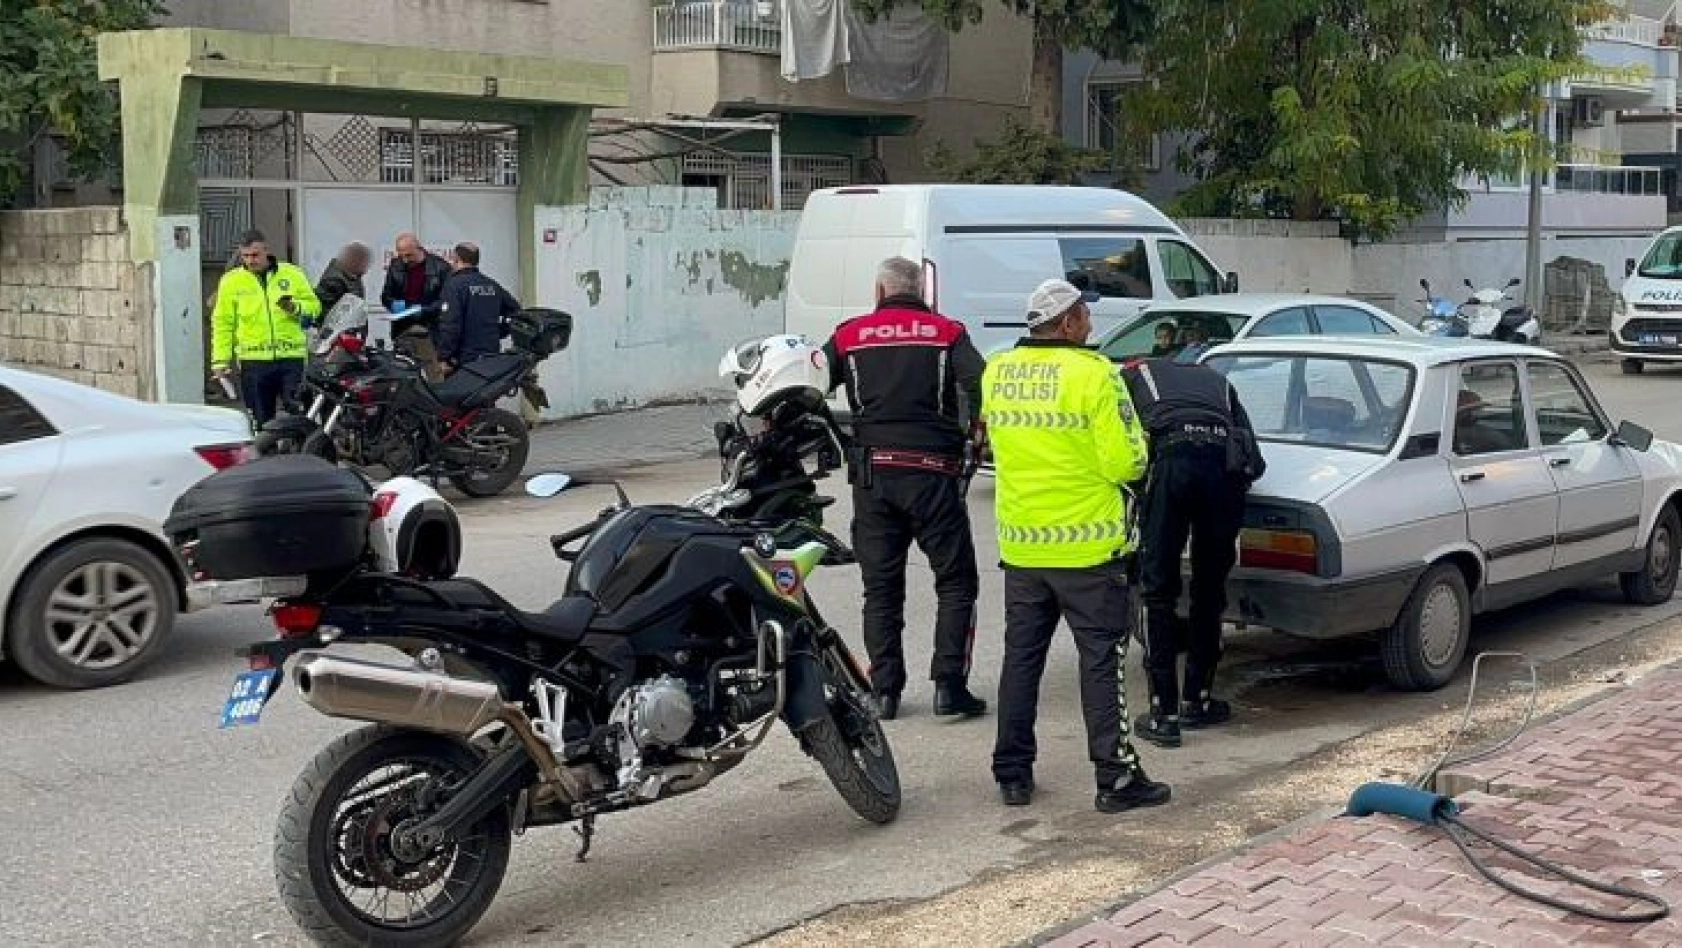 Adıyaman'da şase numarası silinmiş motosiklet yakalandı